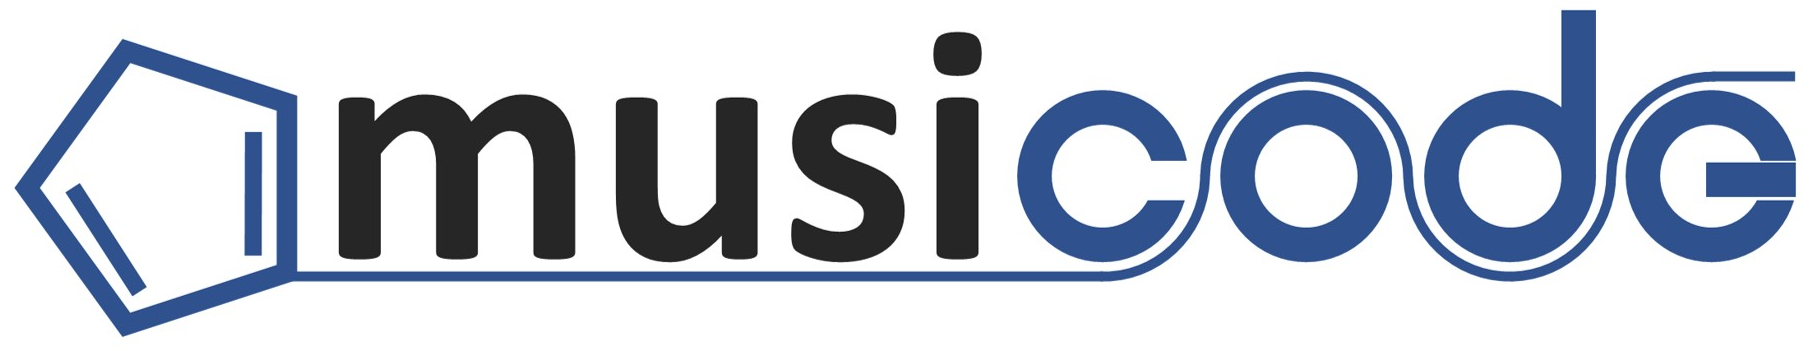 musicode:musicode-logo.jpg